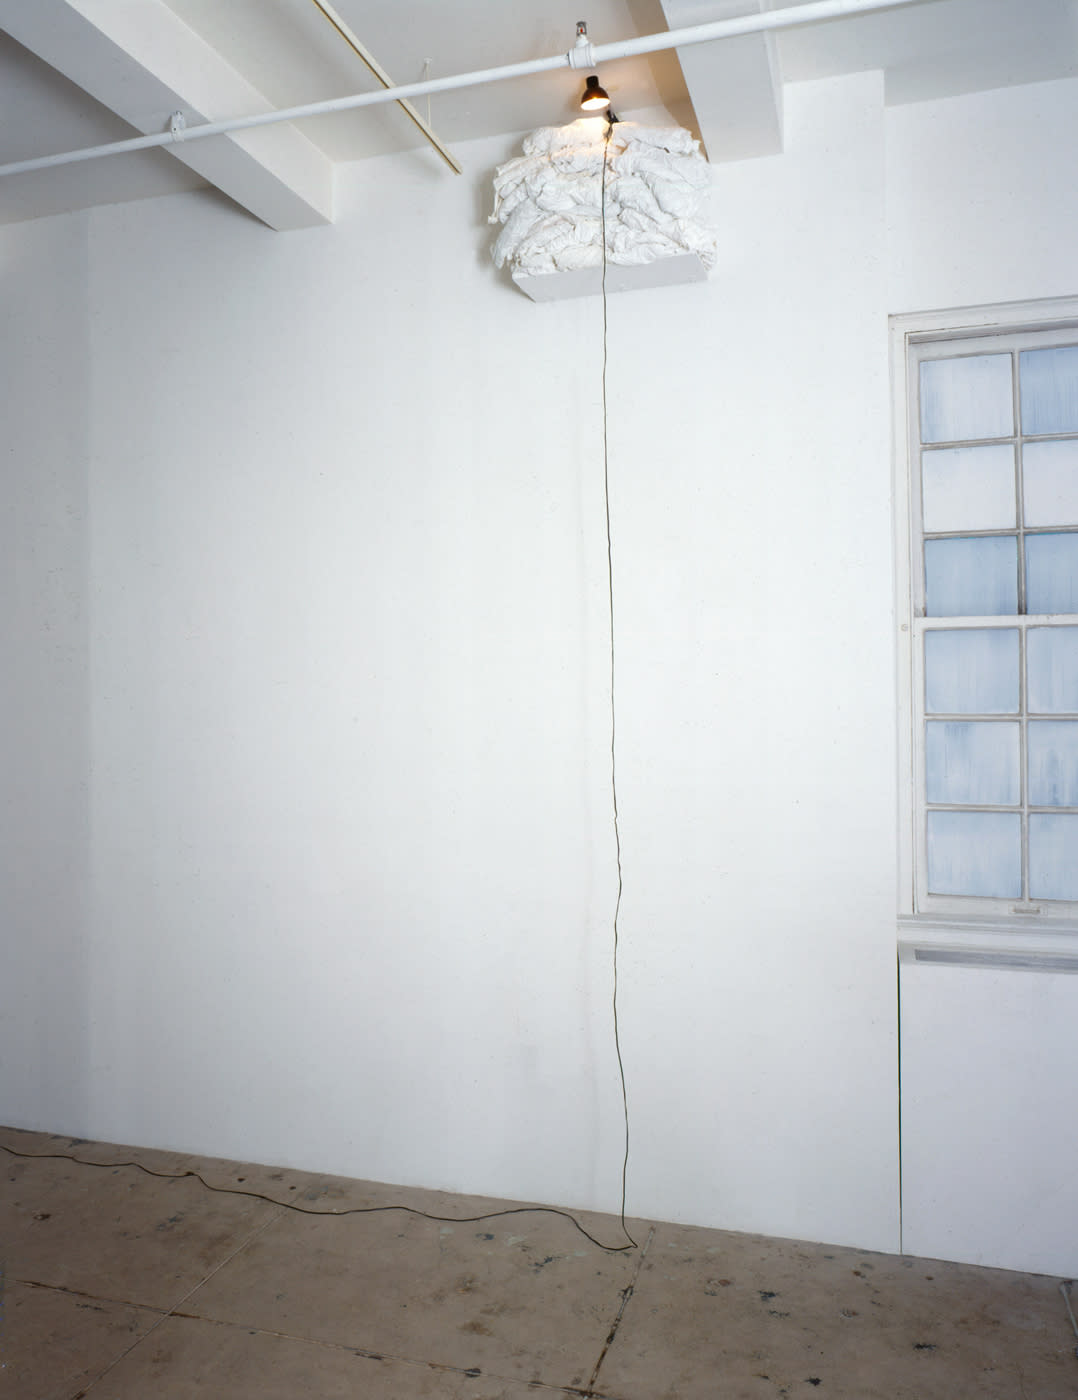 Christian Boltanski, Linen Closet Dead Swiss, 1990